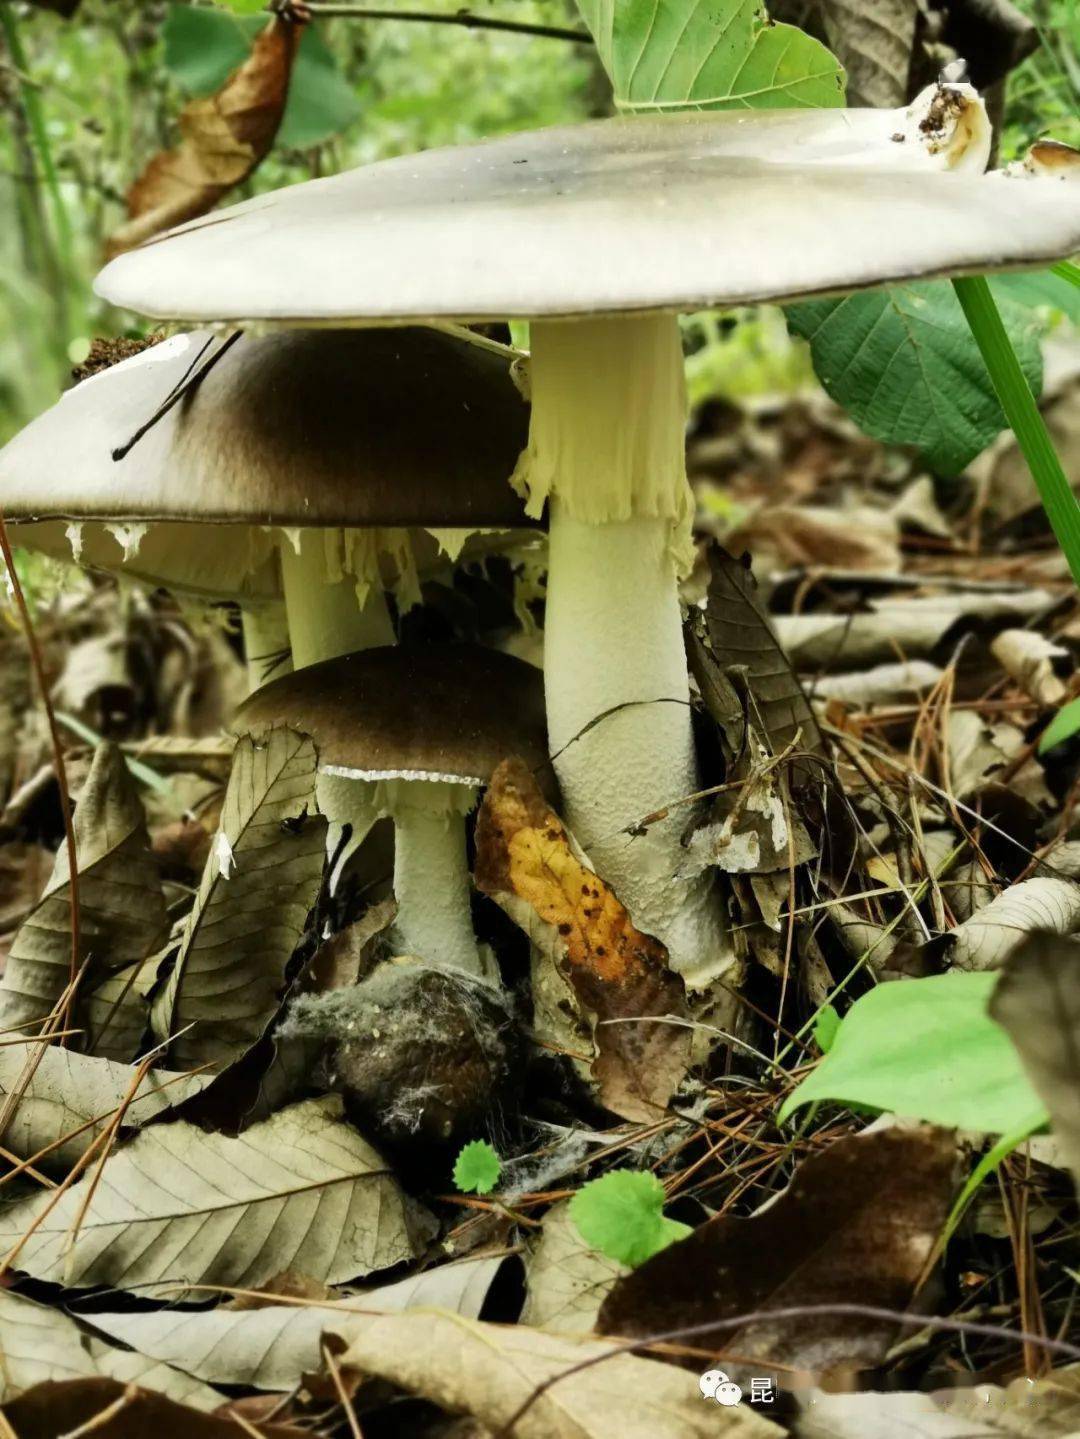 云南毒蘑菇种类图片